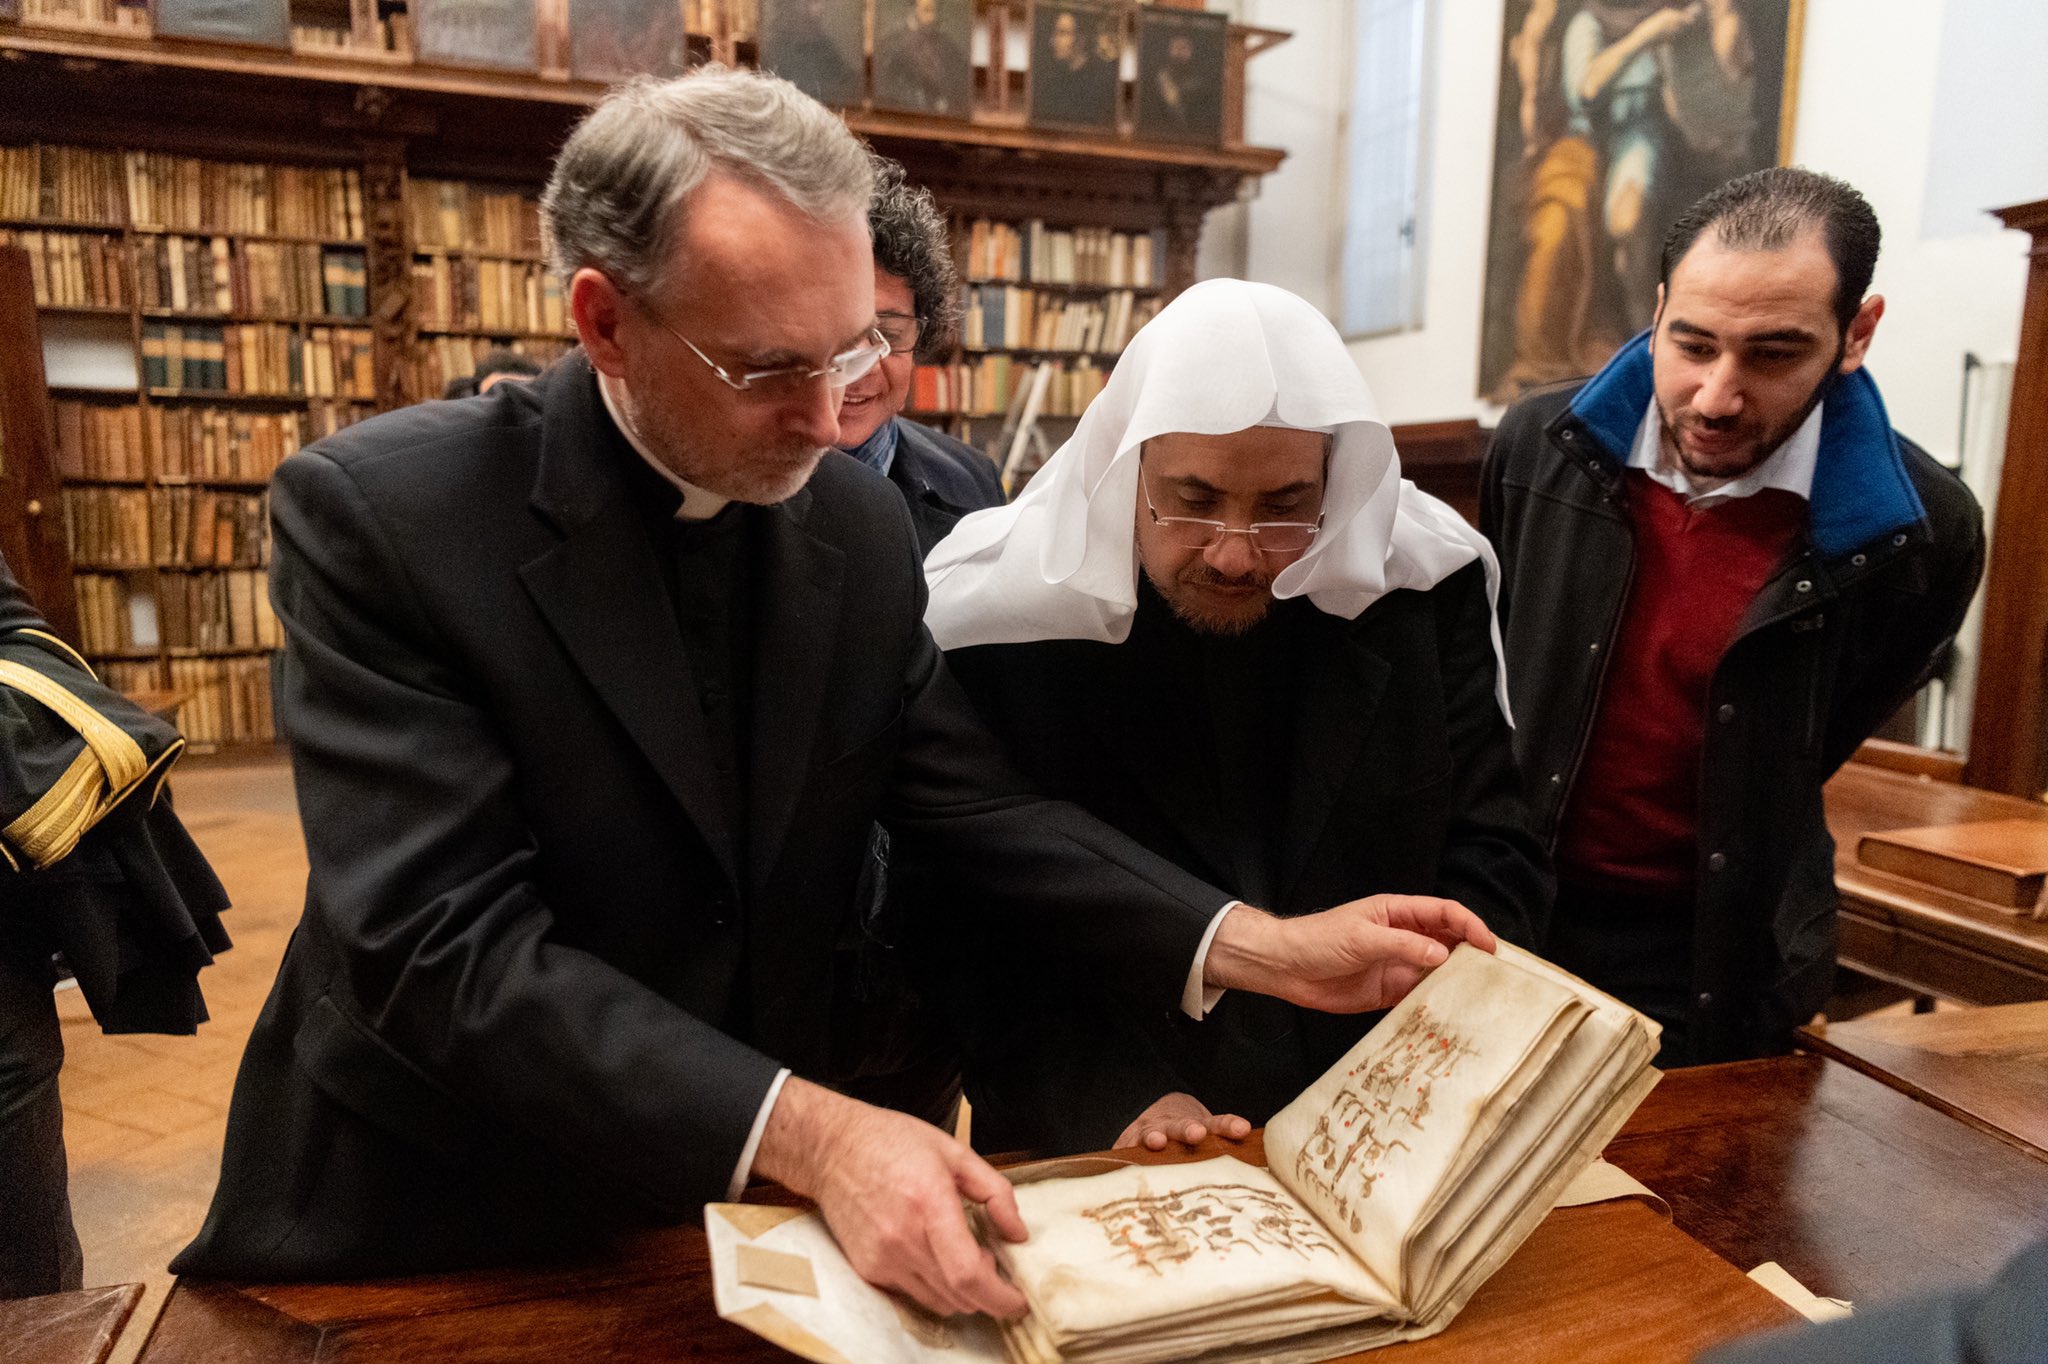 En janvier, MohammadAlissa a visité la Bibliothèque historique Ambrosienne et a donné une conférence à l'Université catholique du Sacré-Cœur de Milan en Italie. Sa visite était axée sur l’apprentissage multiculturel et le dialogue interreligieux.